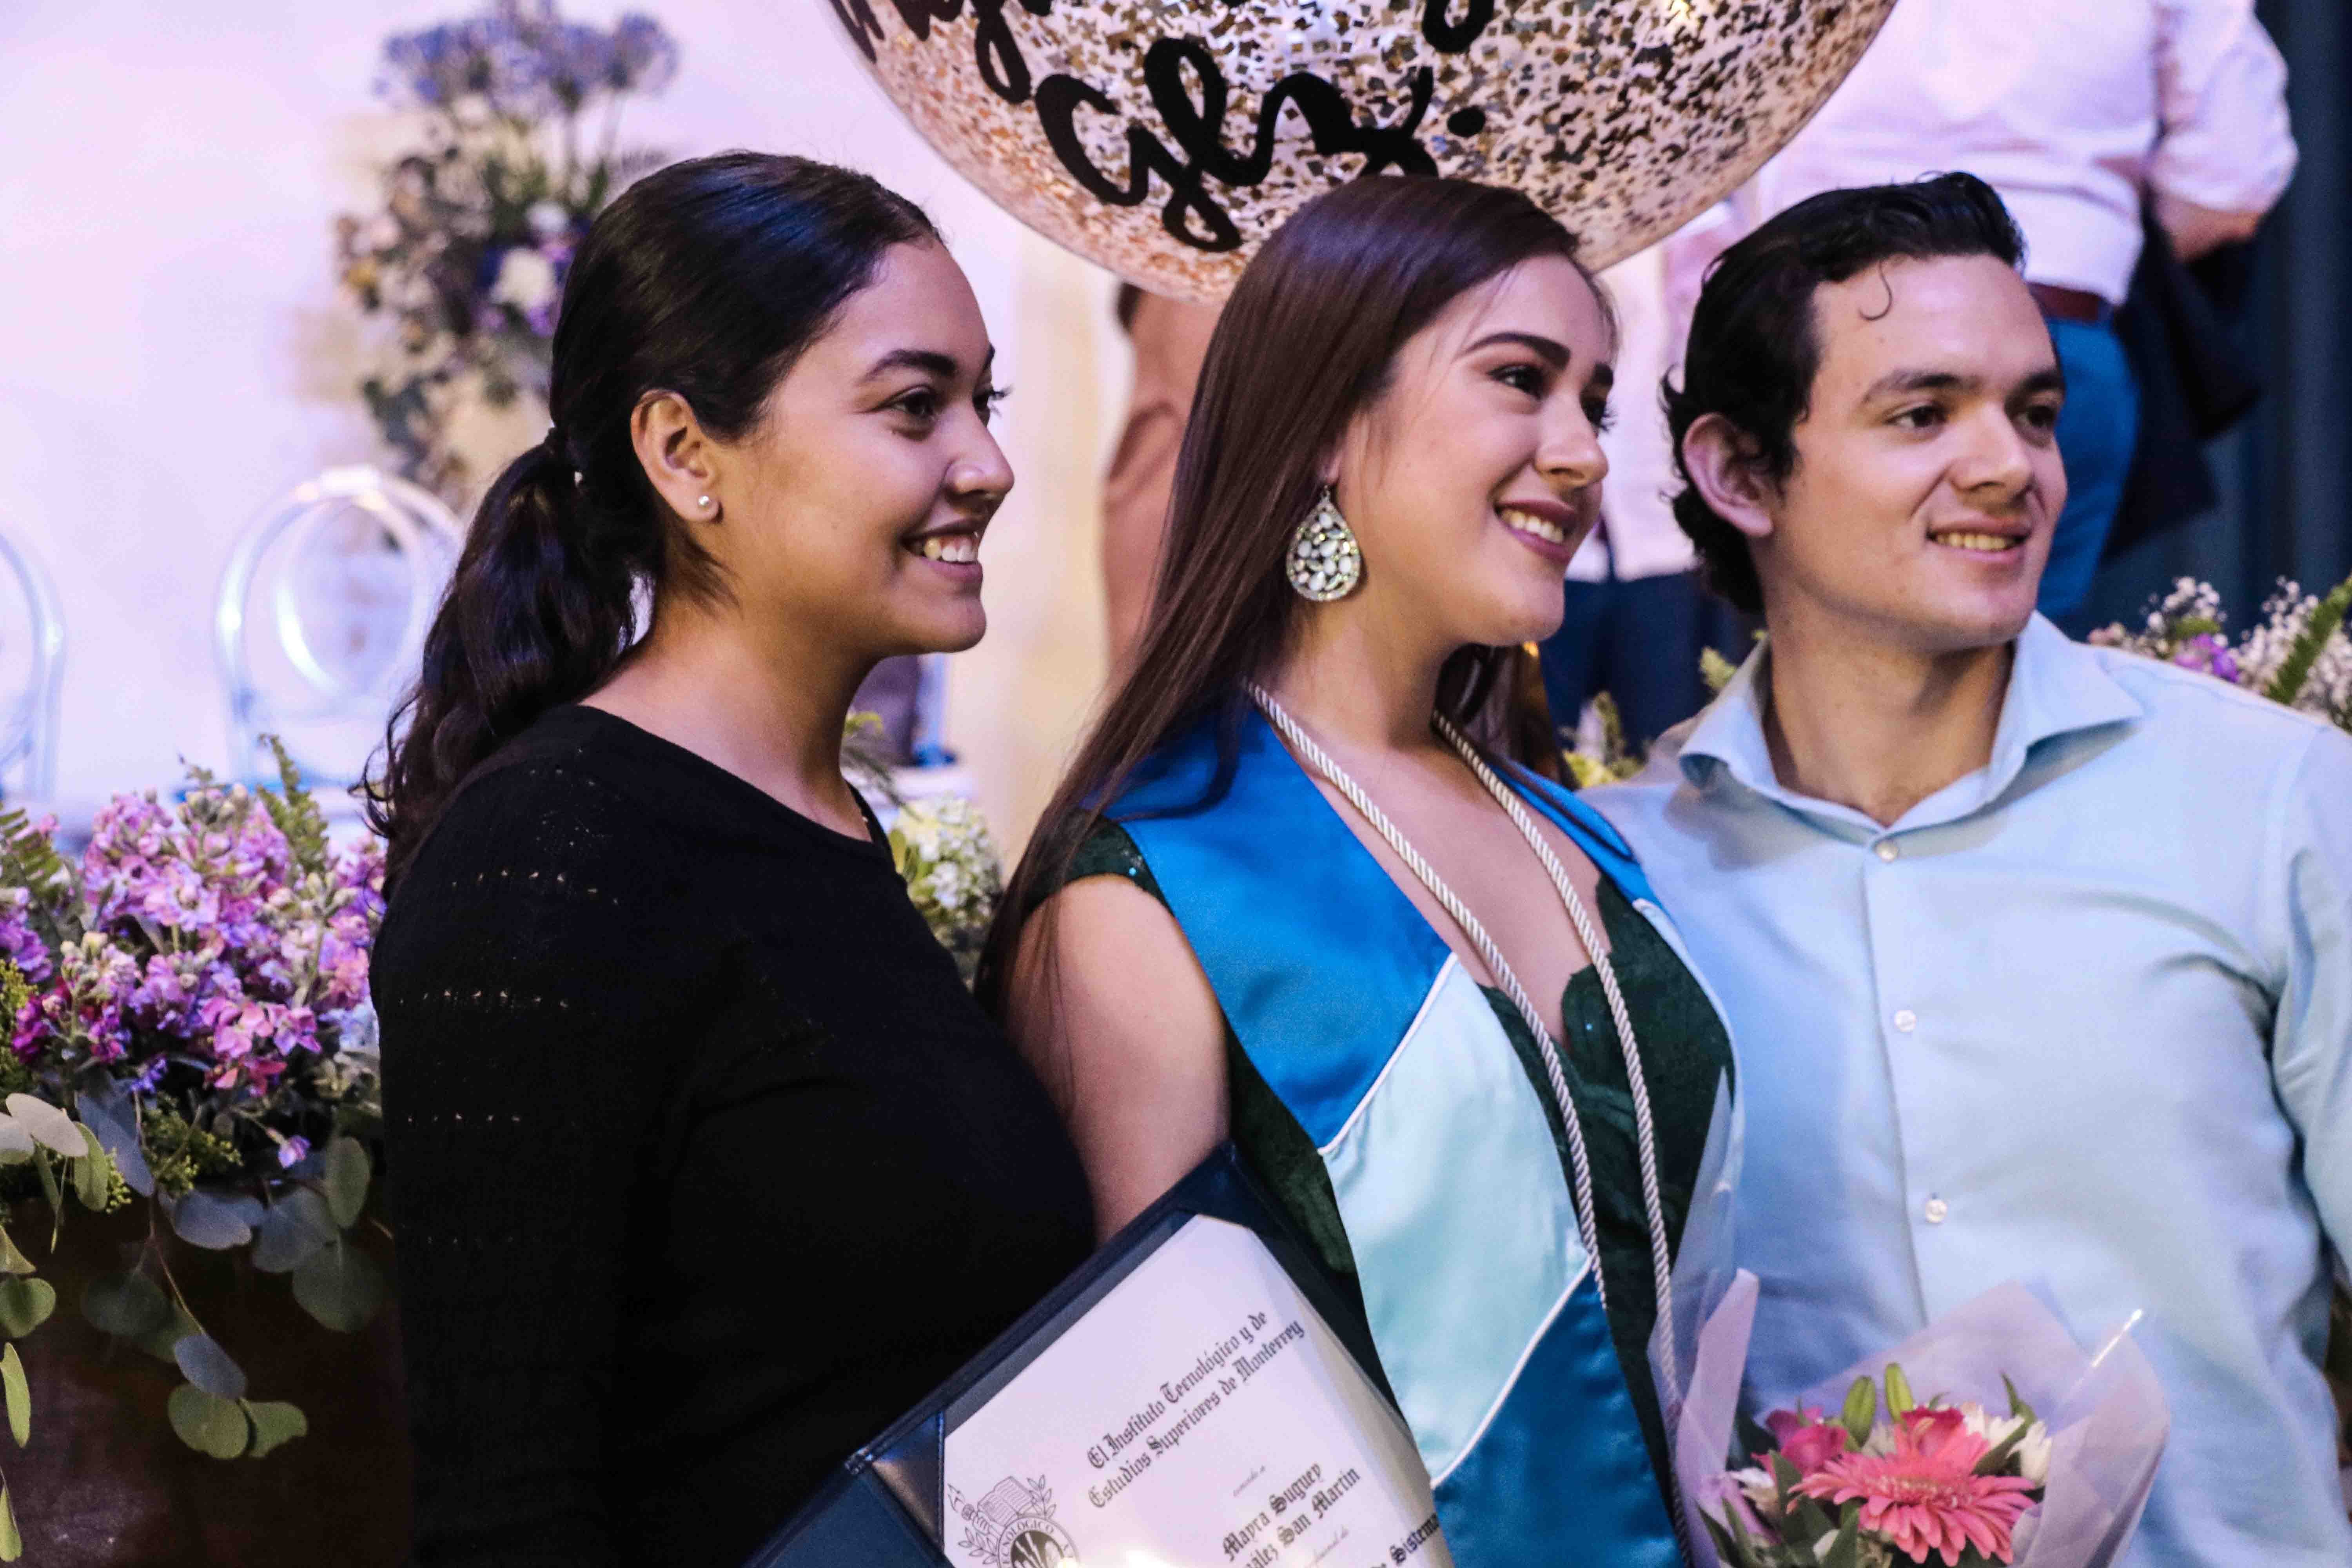 Graduación de profesional del Tec de Monterrey Campus Tampico 